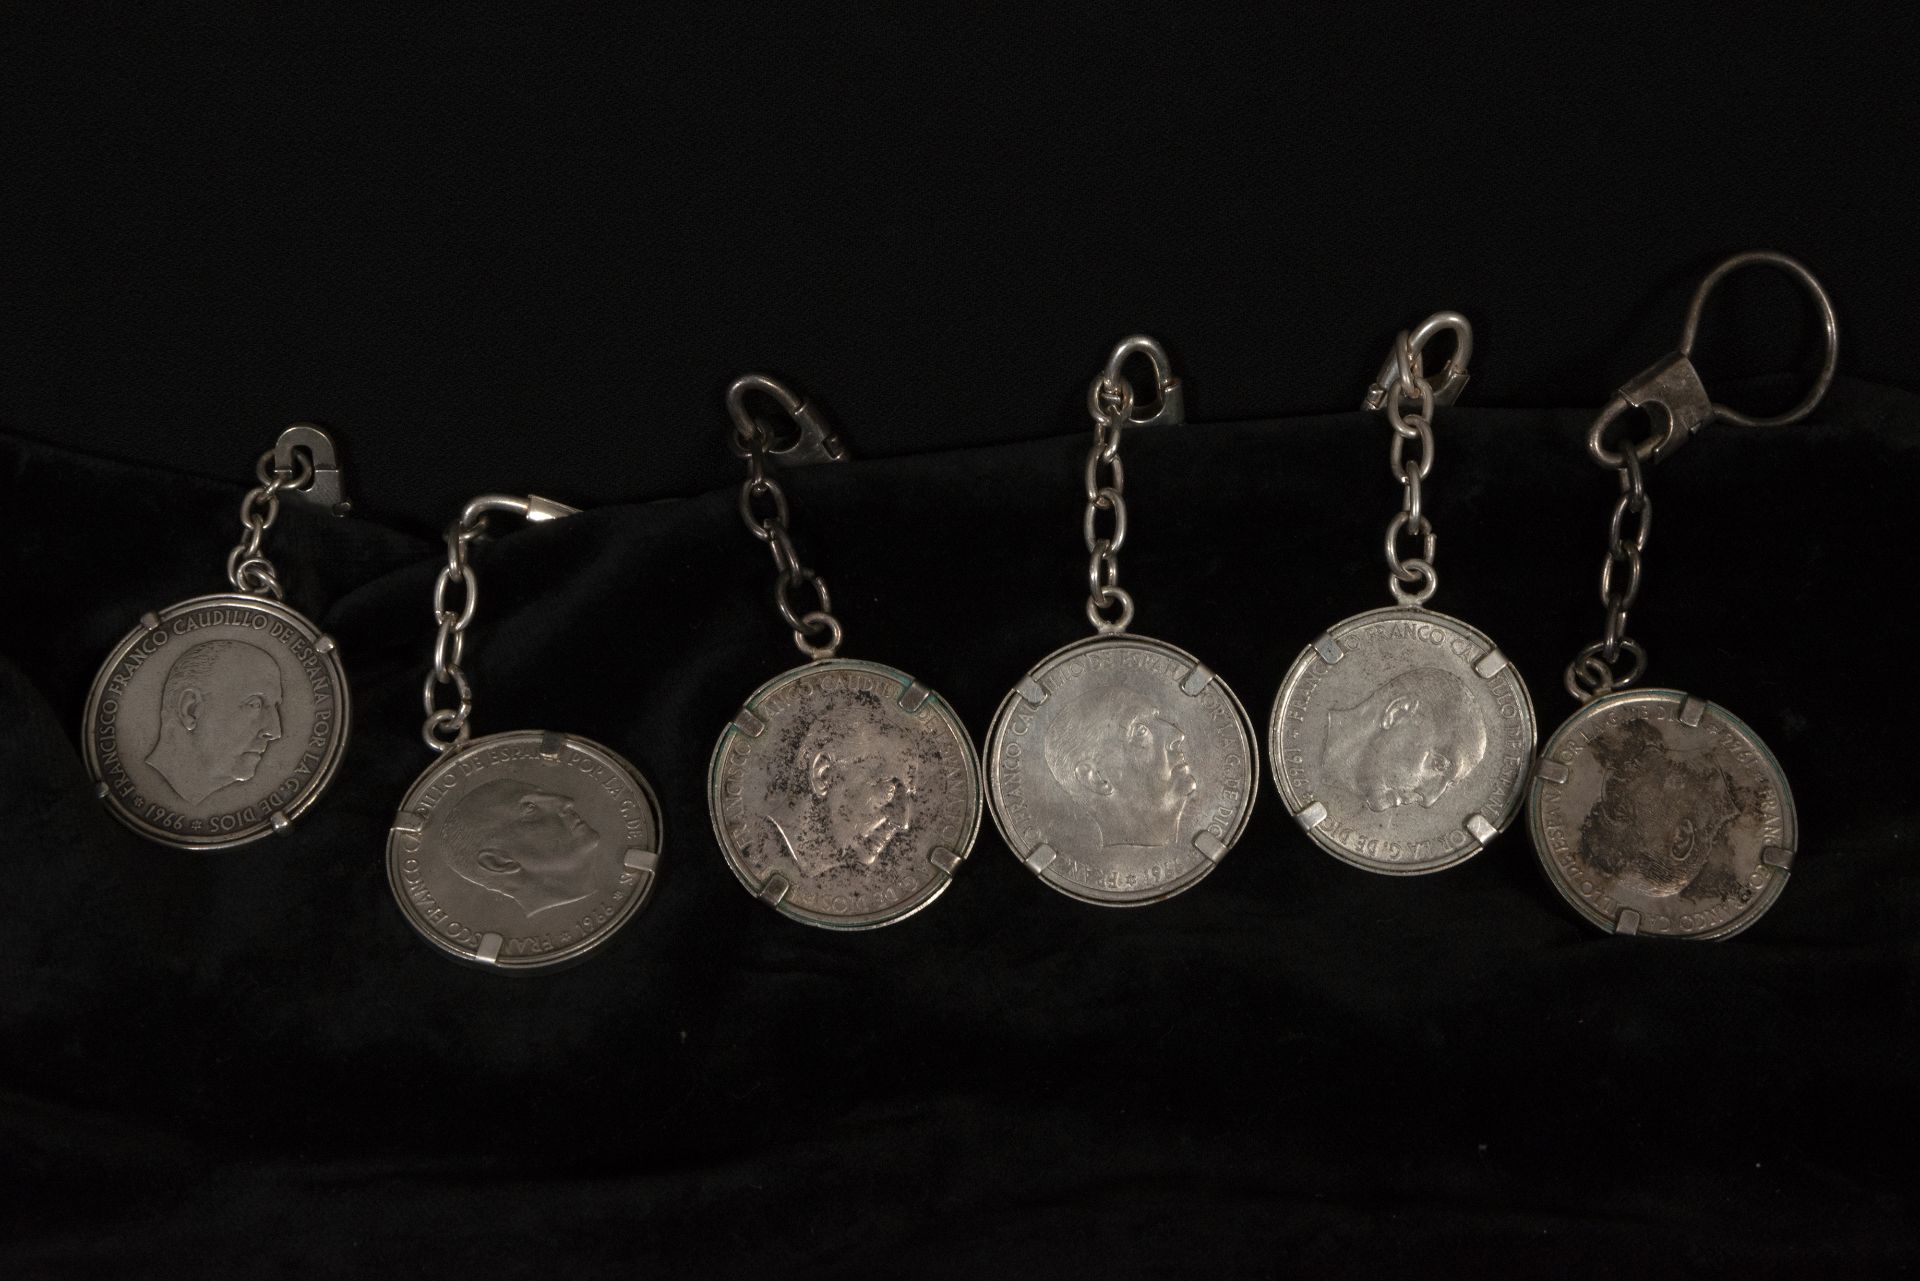 Lot of bracelet decorations made up of 925 silver coins, framed - Bild 2 aus 3